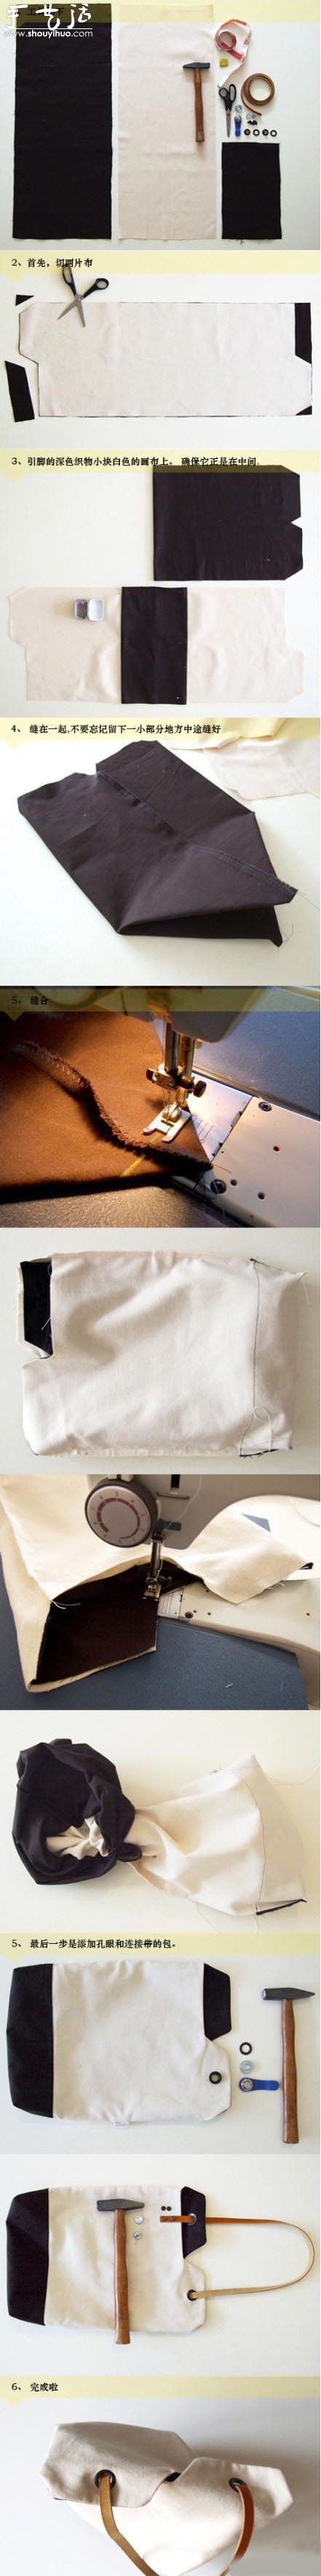 女式手提袋的手工制作教程